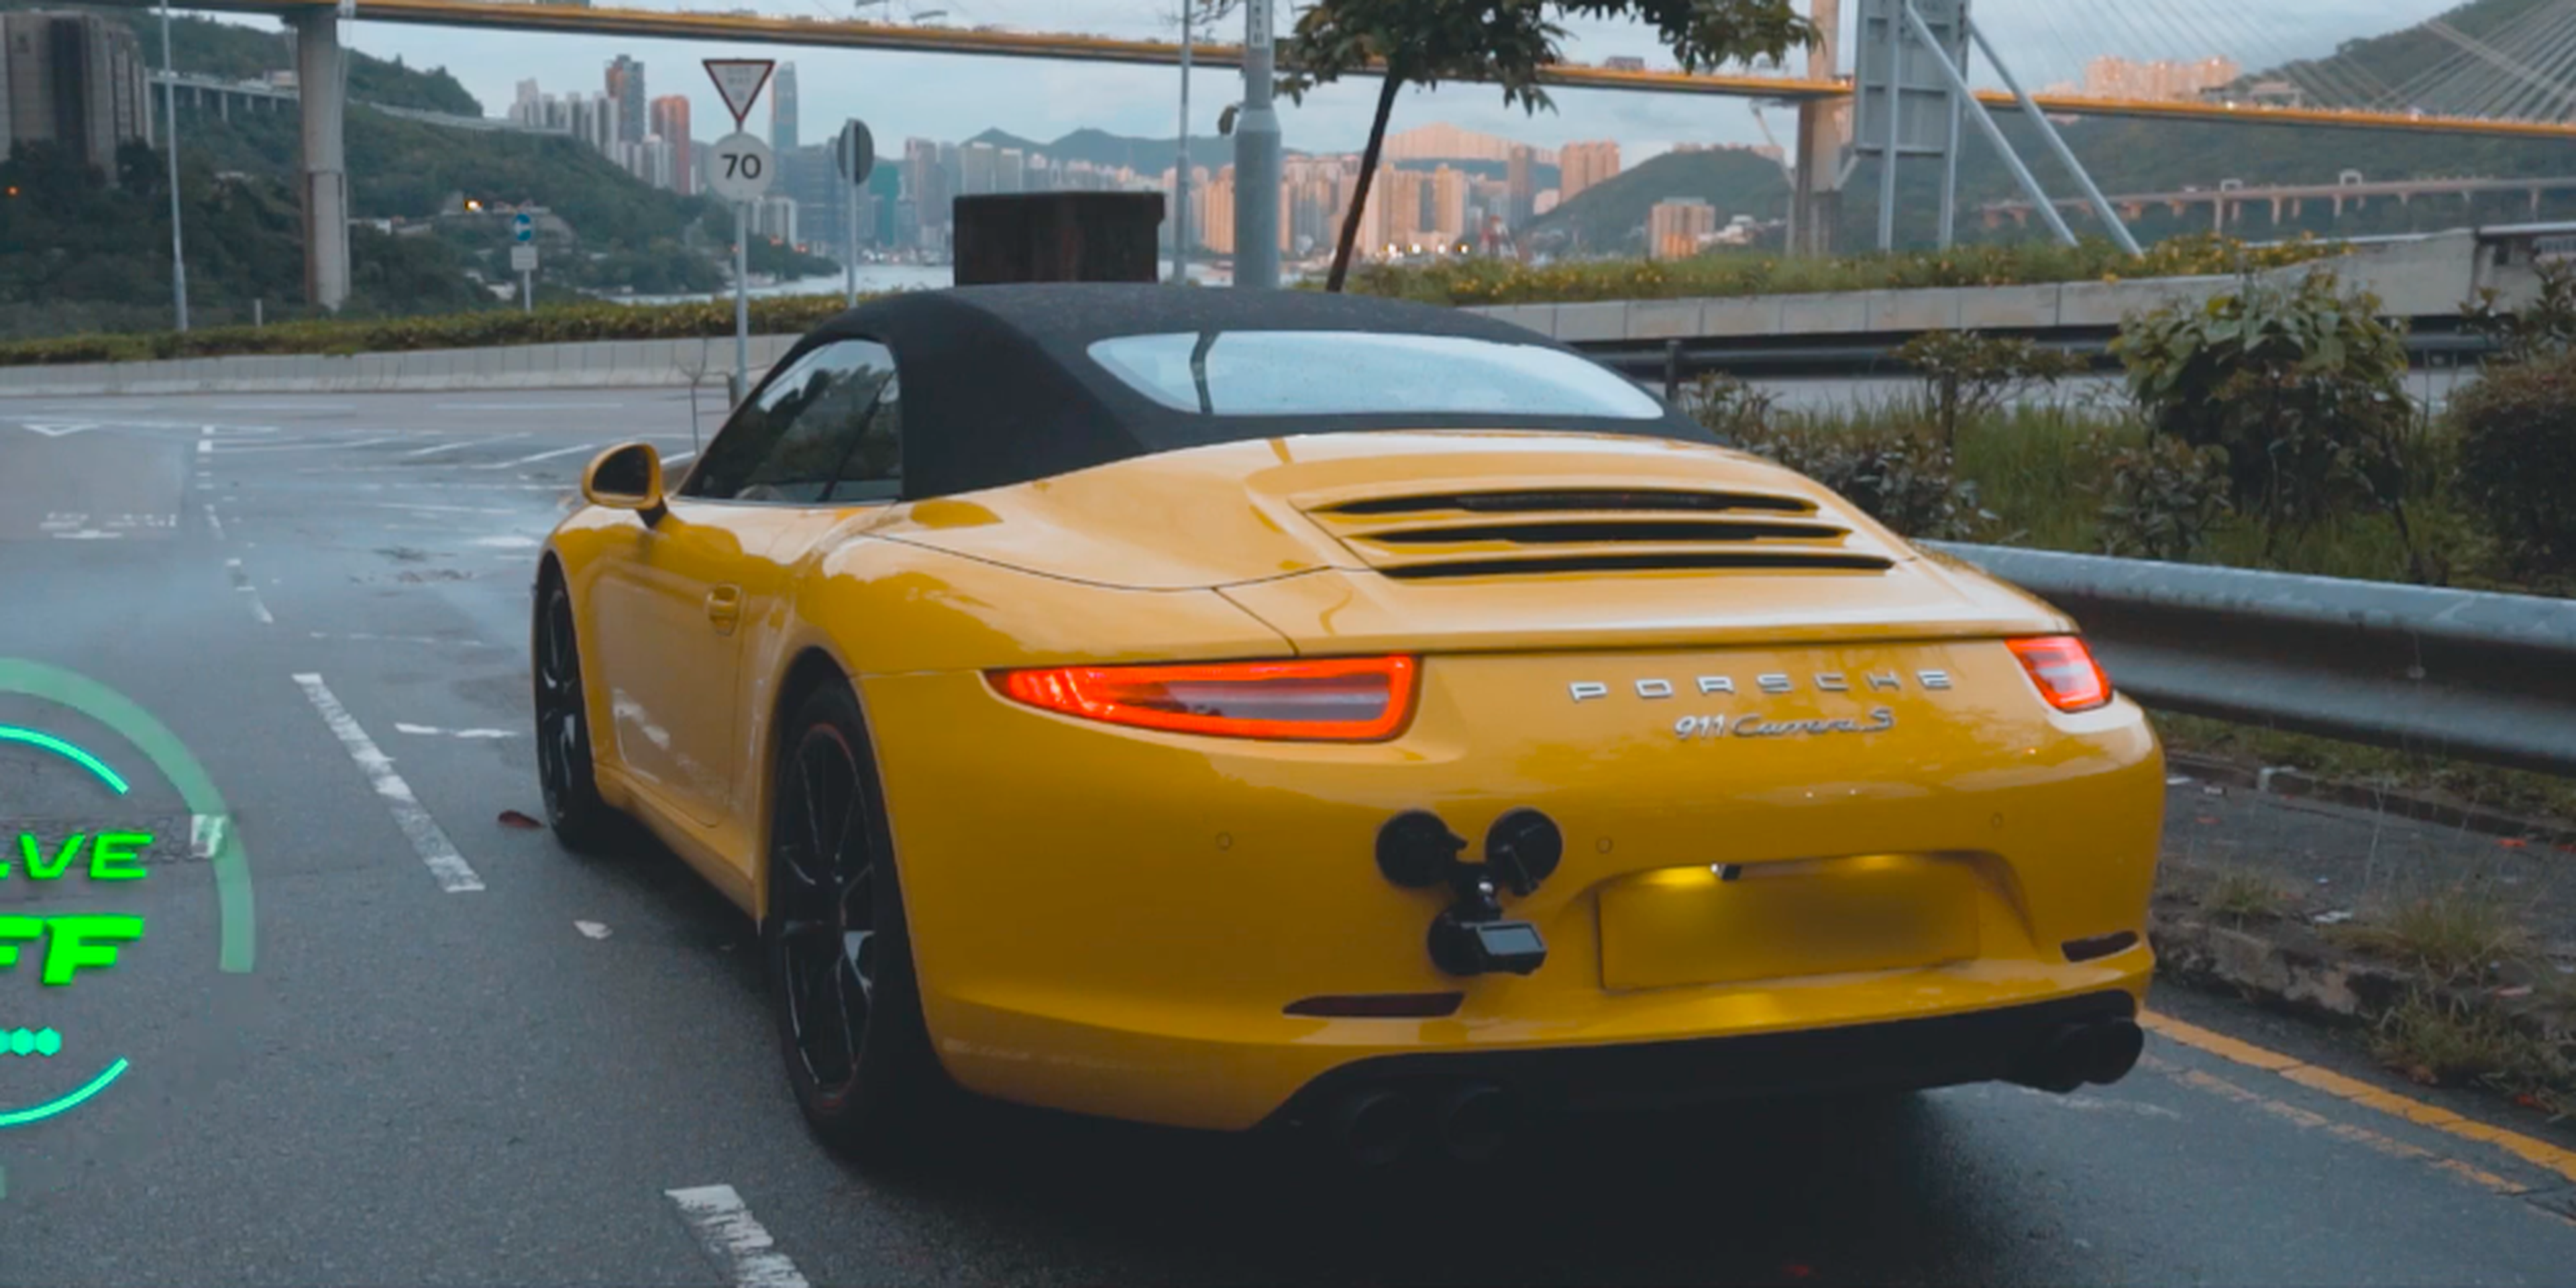 VÍDEO: Este Porsche 911 Carrera S suena que es una delicia... ¡Y esas llamaradas!